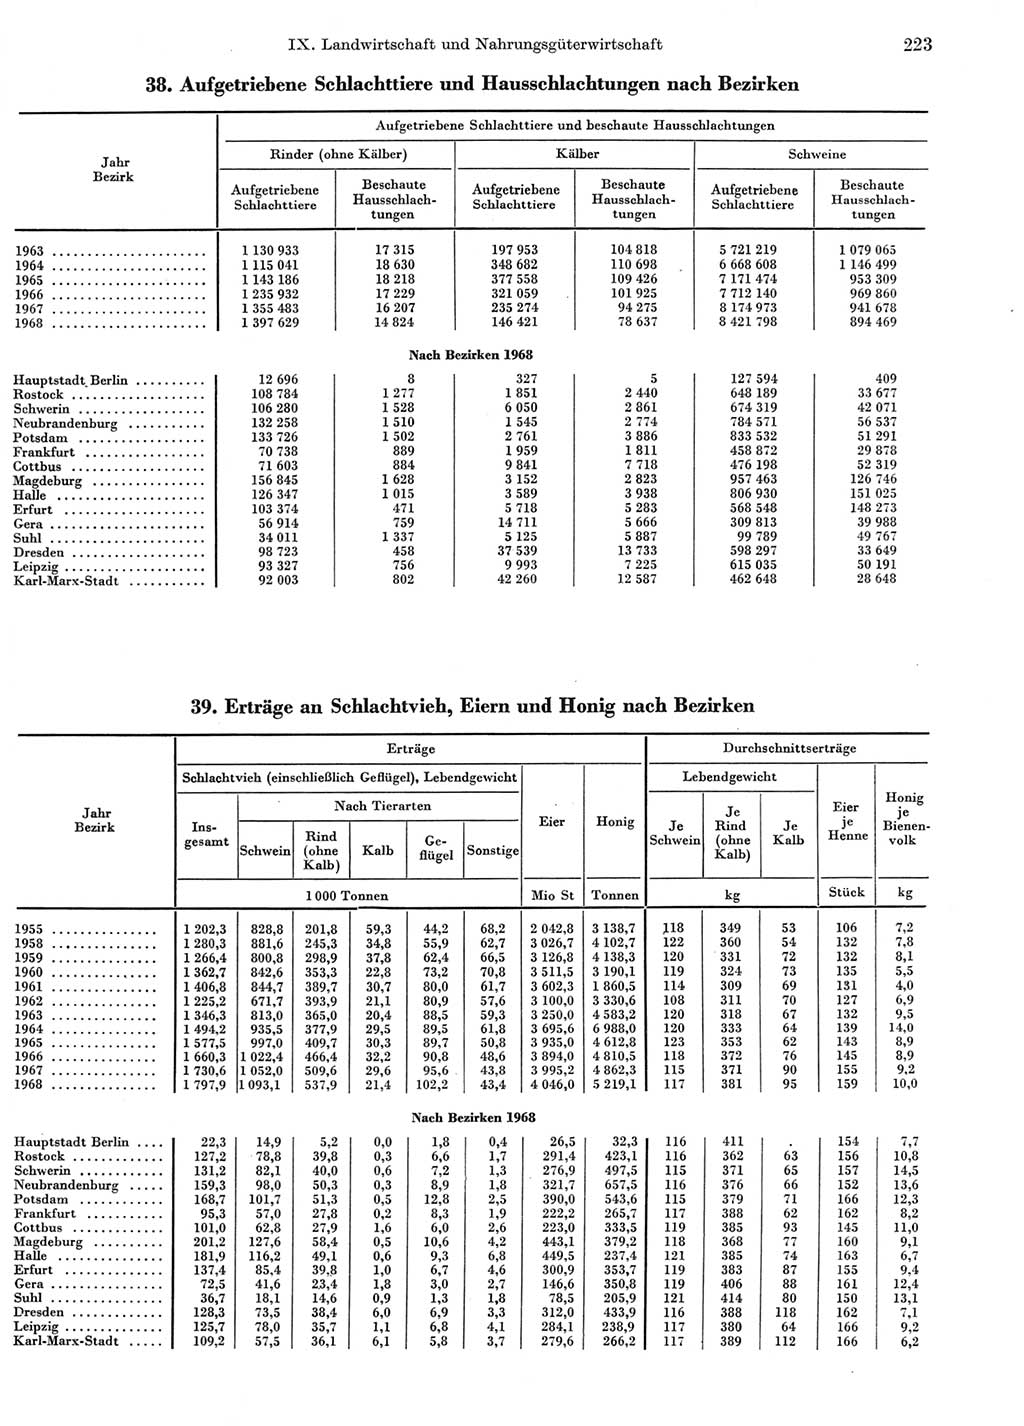 Statistisches Jahrbuch der Deutschen Demokratischen Republik (DDR) 1969, Seite 223 (Stat. Jb. DDR 1969, S. 223)